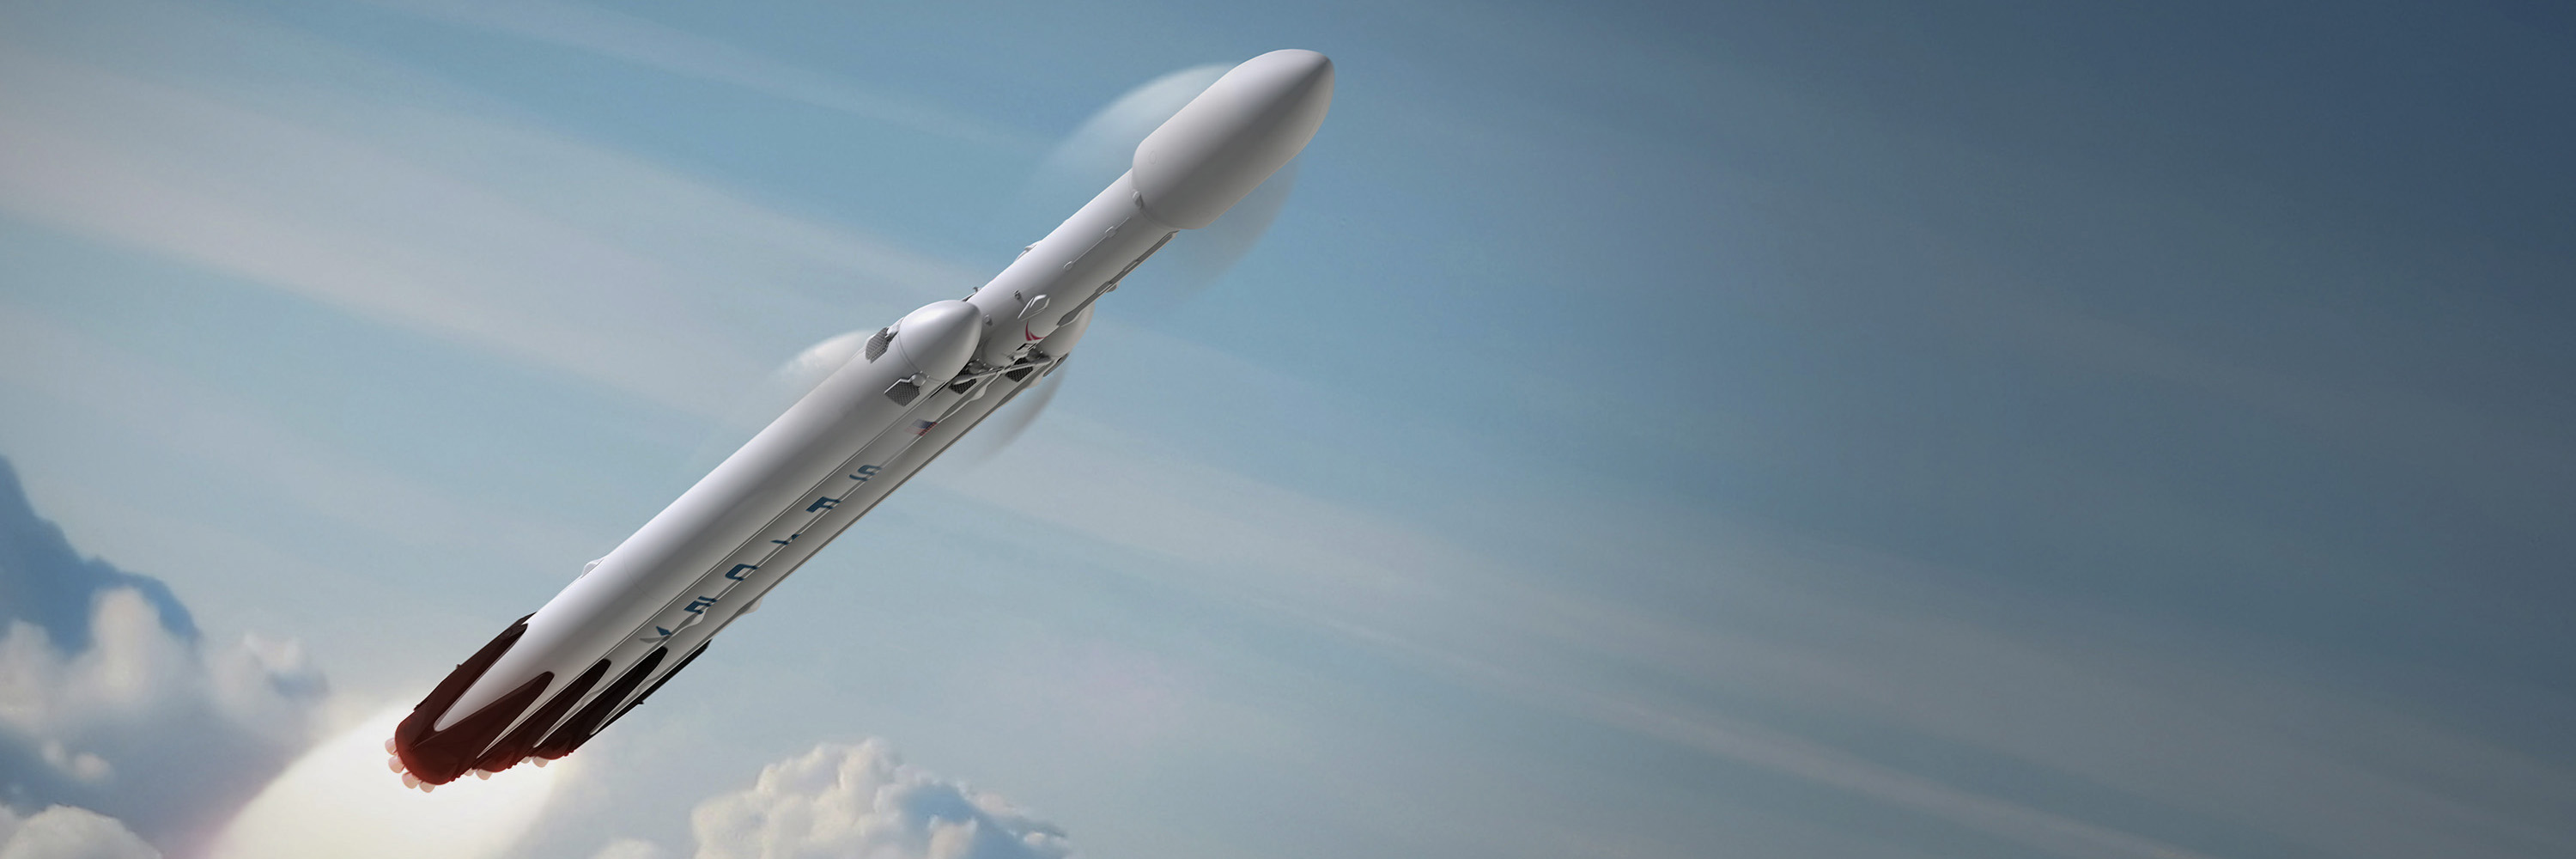 Ракета "Falcon Heavy" уже пересекла орбиту Марса